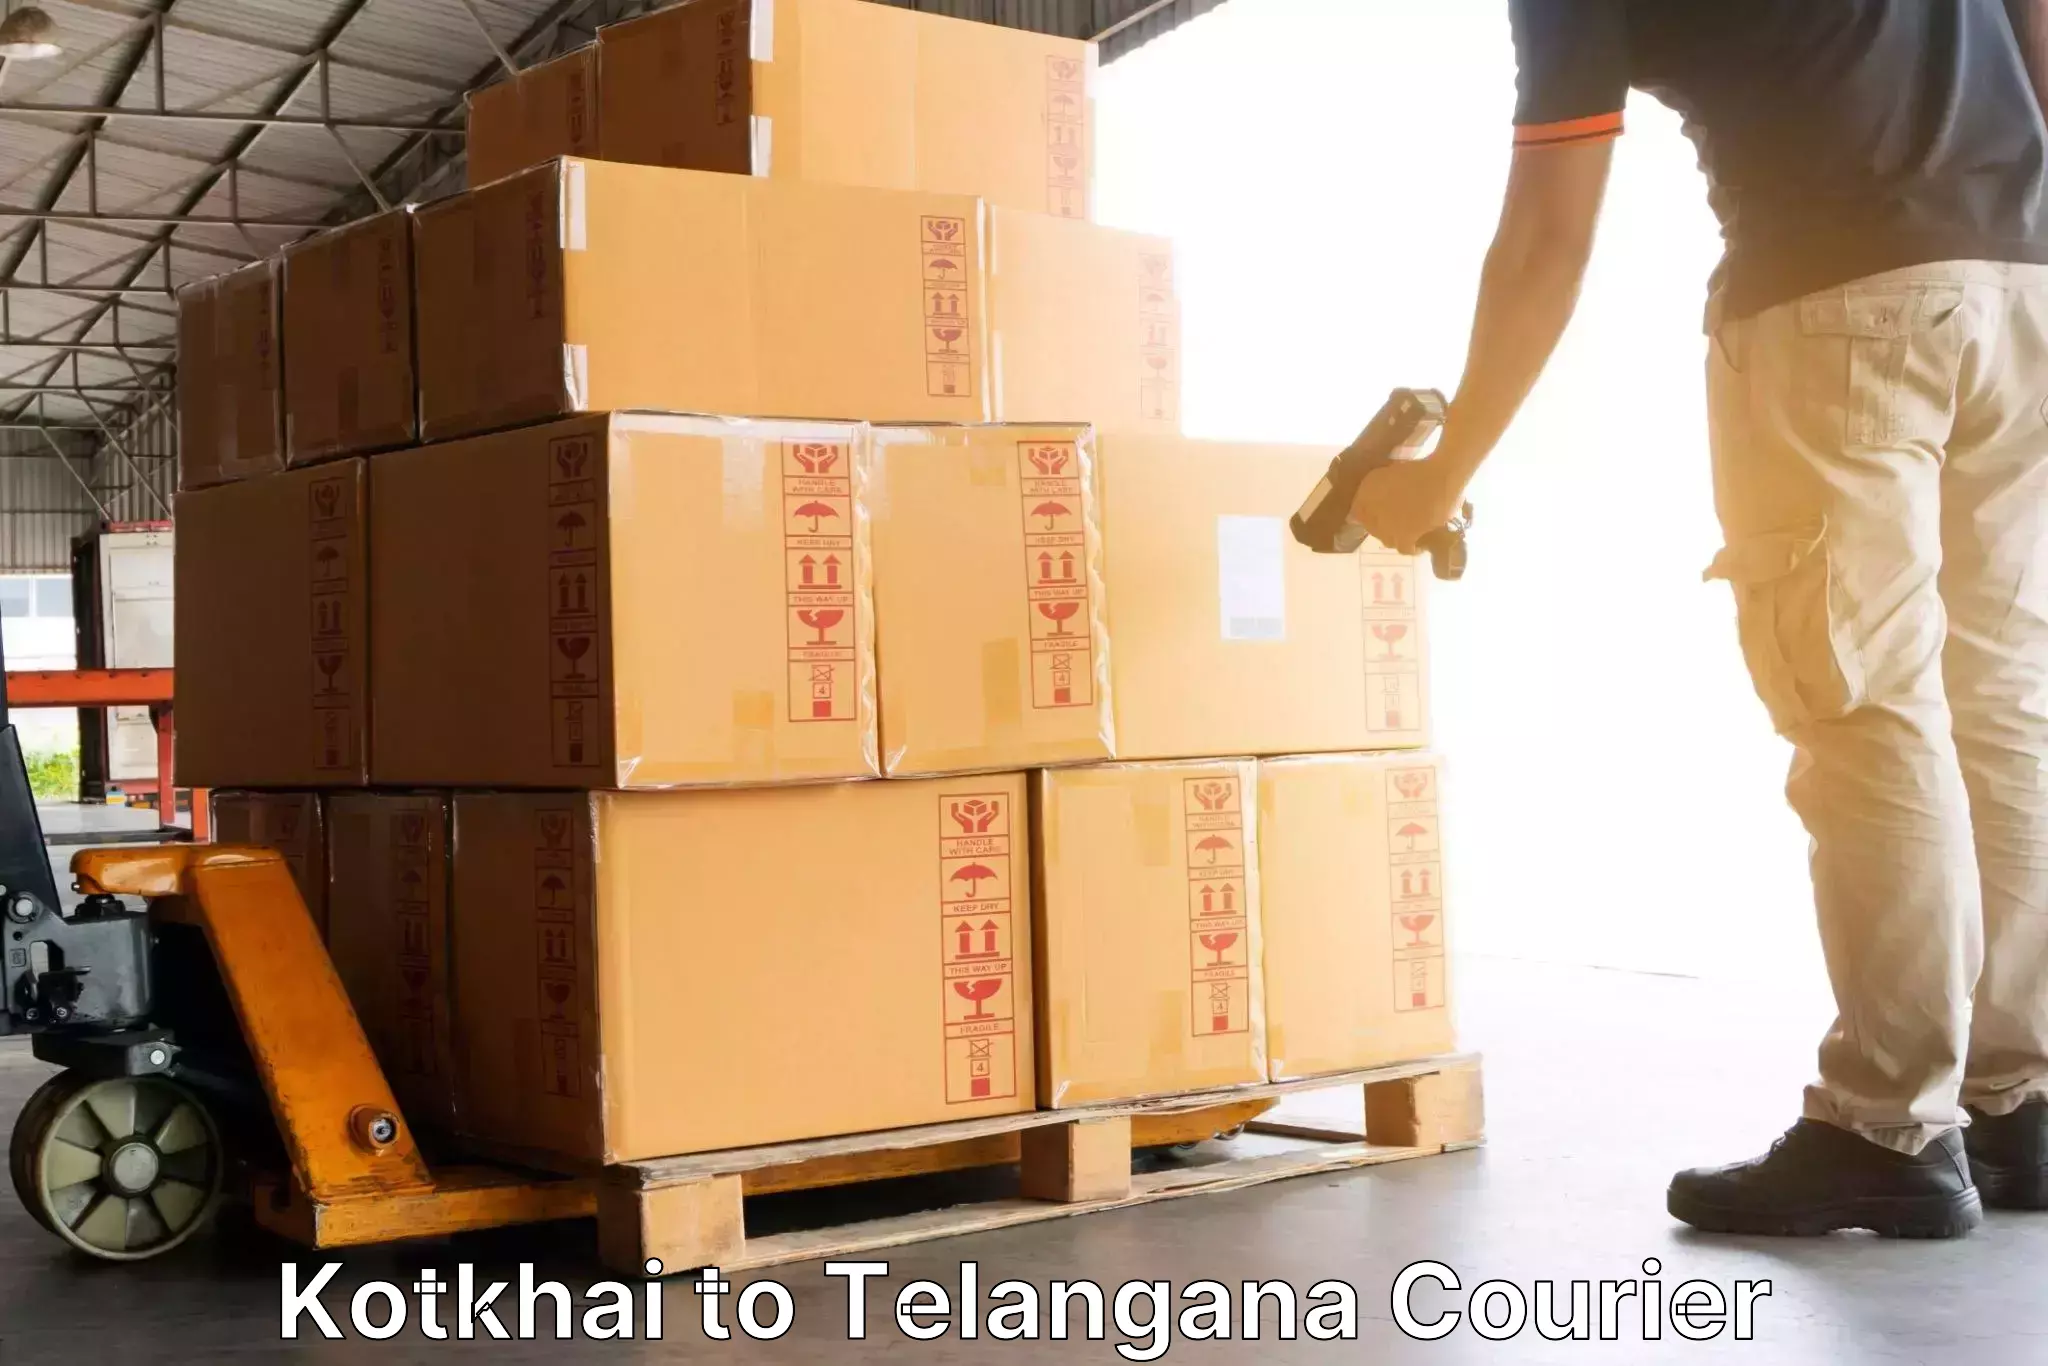 Logistics service provider Kotkhai to Haliya